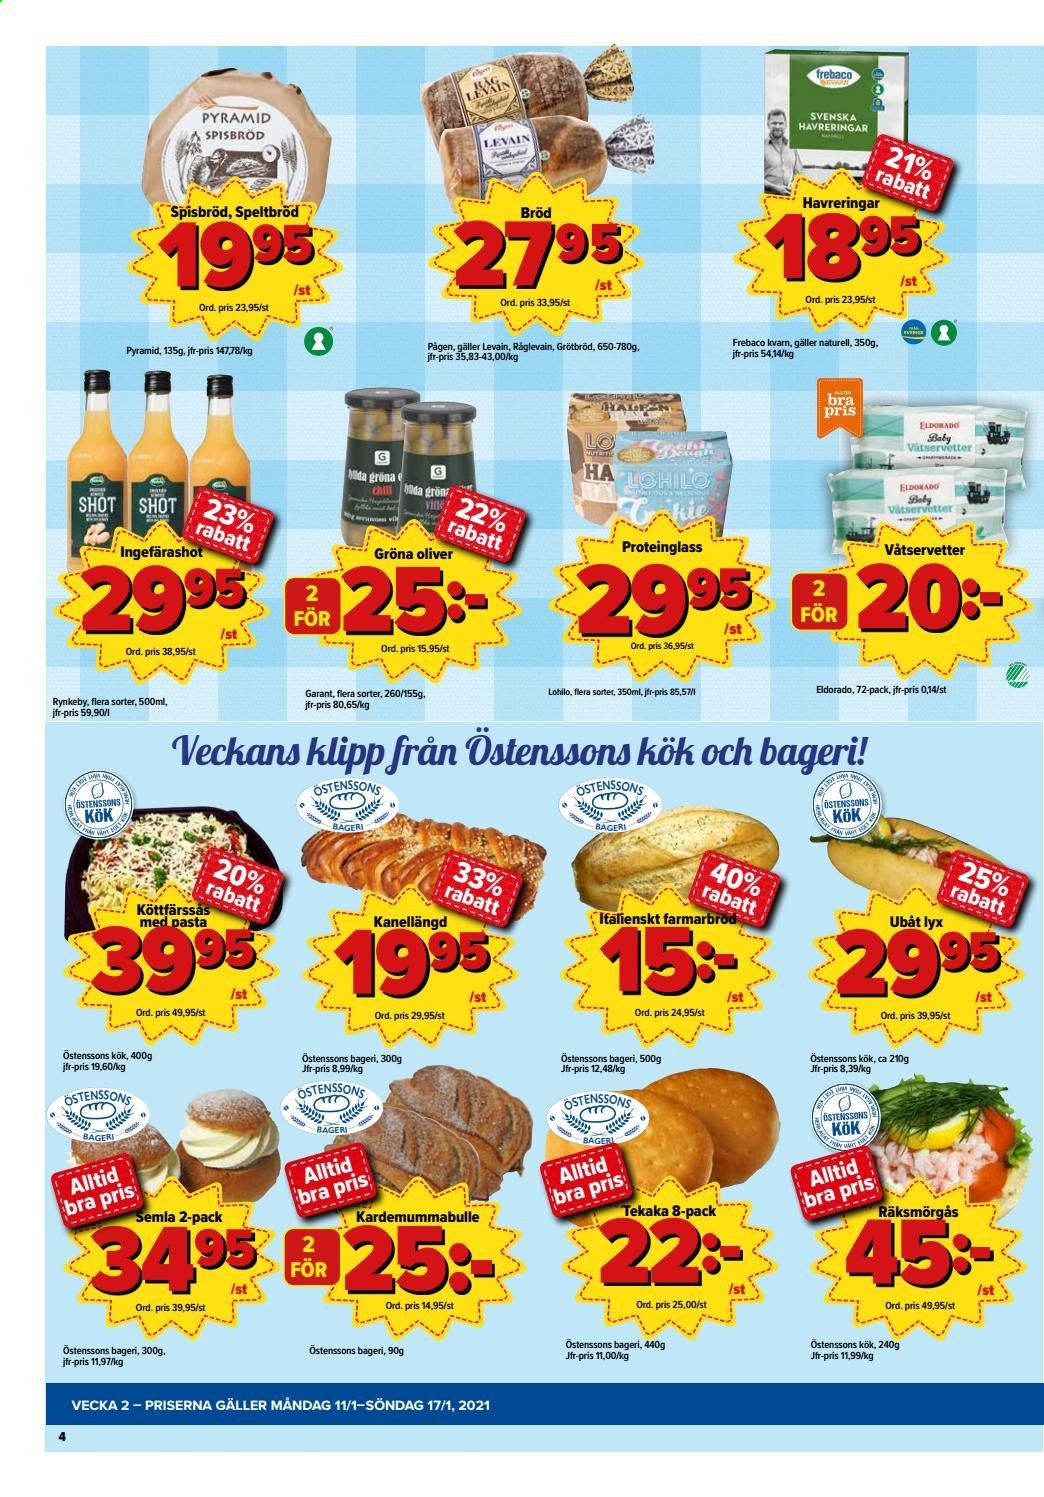 thumbnail - Östenssons reklamblad - 11/1 2021 - 17/1 2021 - varor från reklamblad - bröd, oliver, pasta, våtservetter. Sida 4.